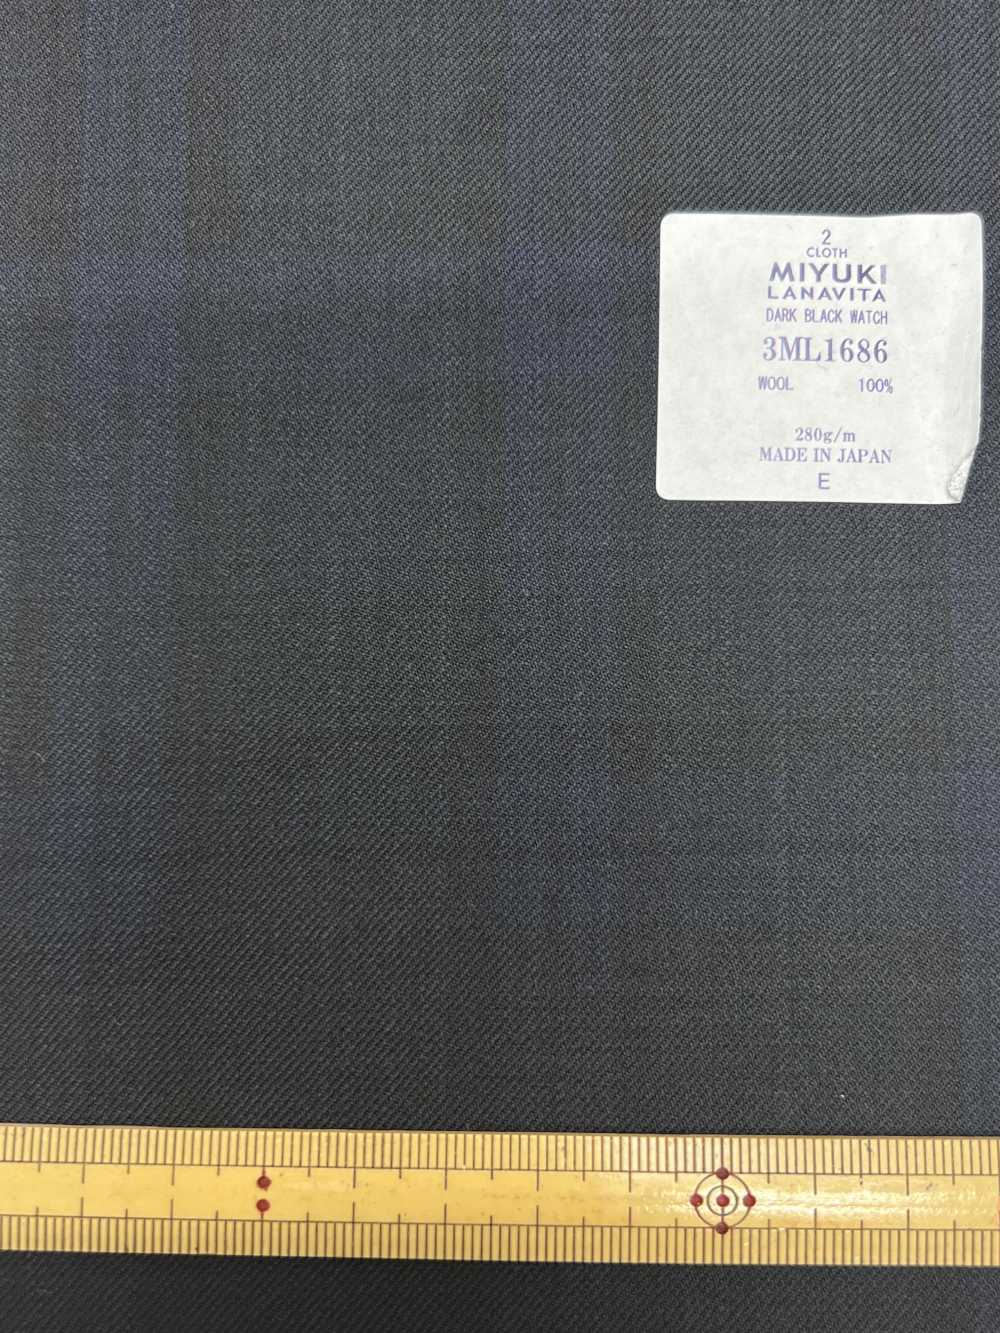 3ML1686 RELOJ MIYUKI CREATIVE LANAVITA NEGRO OSCURO Azul Marino[Textil] Miyuki Keori (Miyuki)